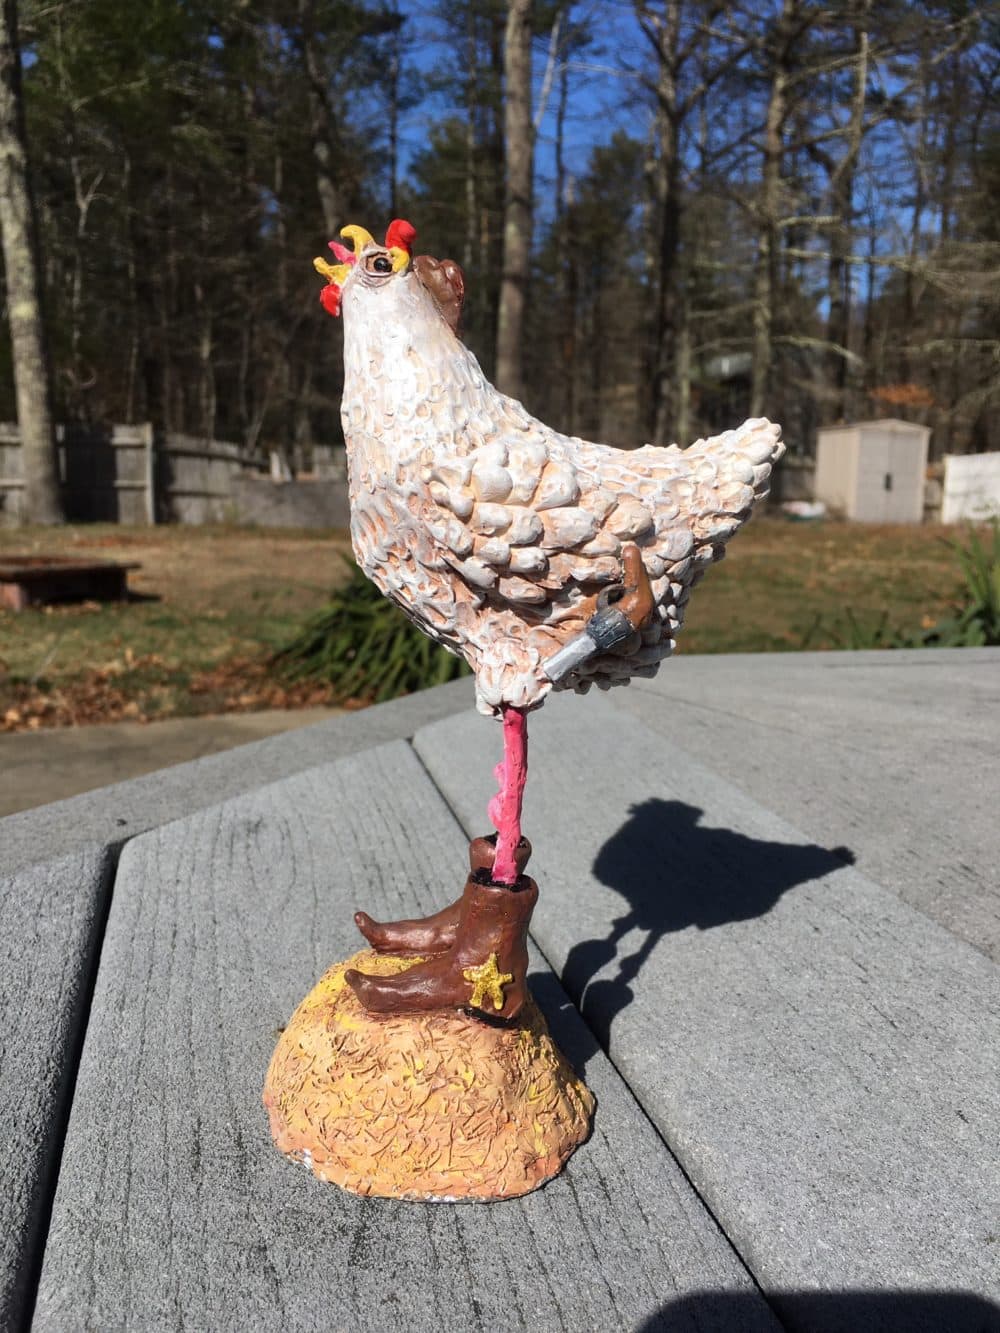 A chicken sculpture by Sara Micciche. (Courtesy Chuck Stigliano)